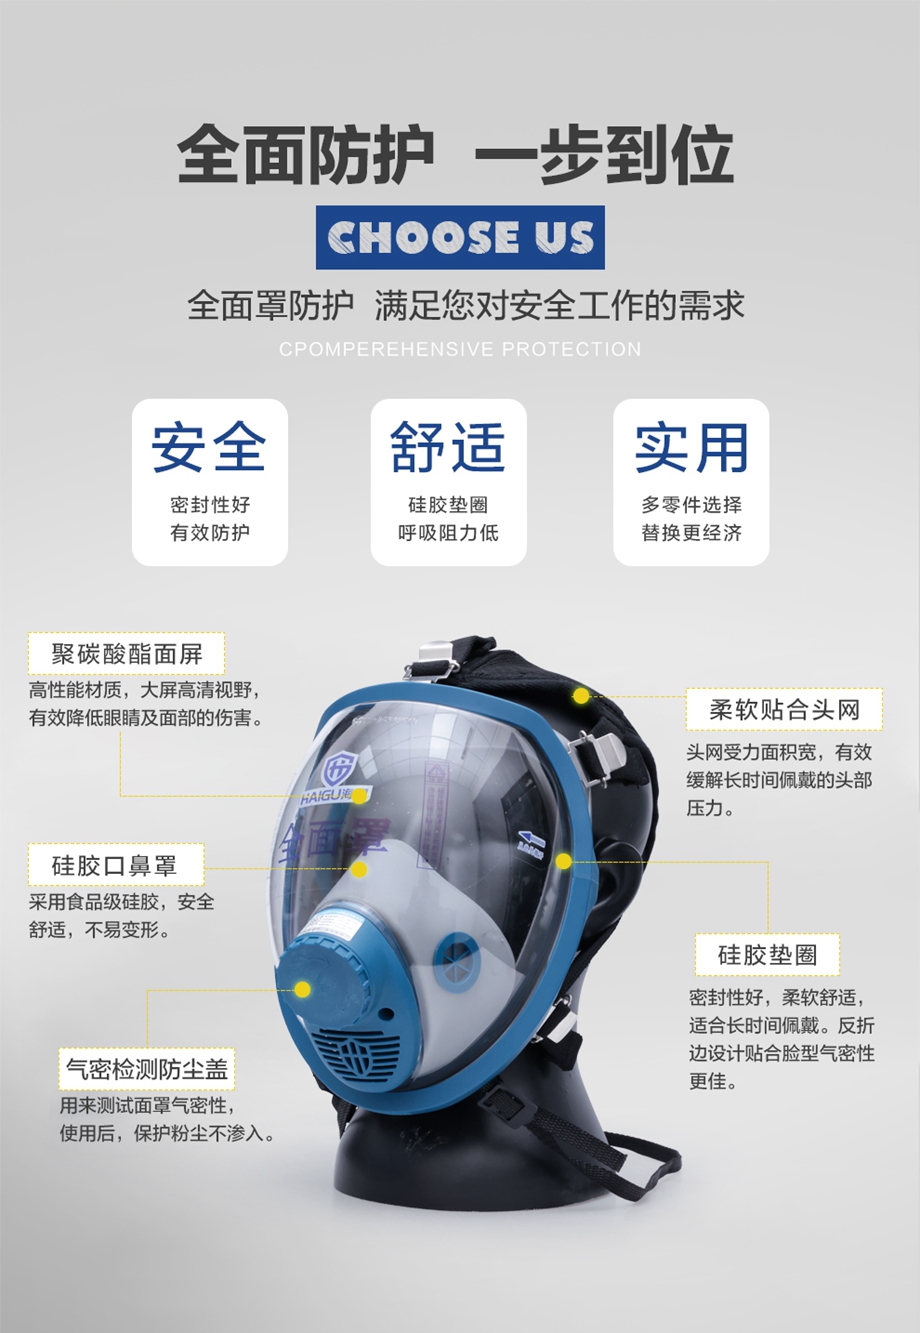 海固HG-800全面罩 防毒防尘面具 工业防毒面具